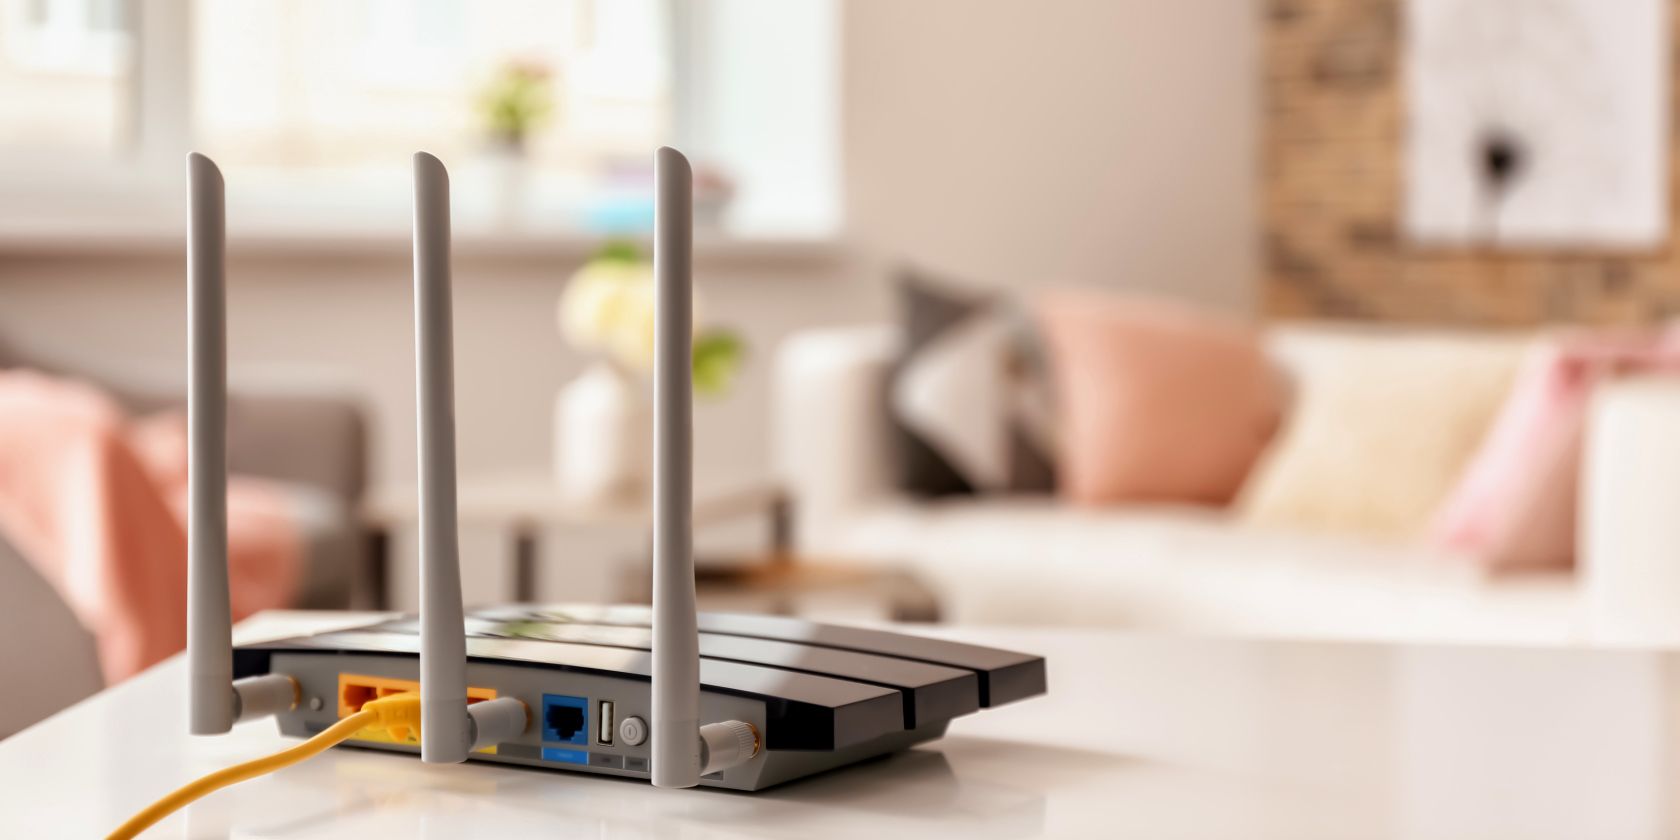 Le routeur Wi-Fi est posé sur une table avec un câble Ethernet branché